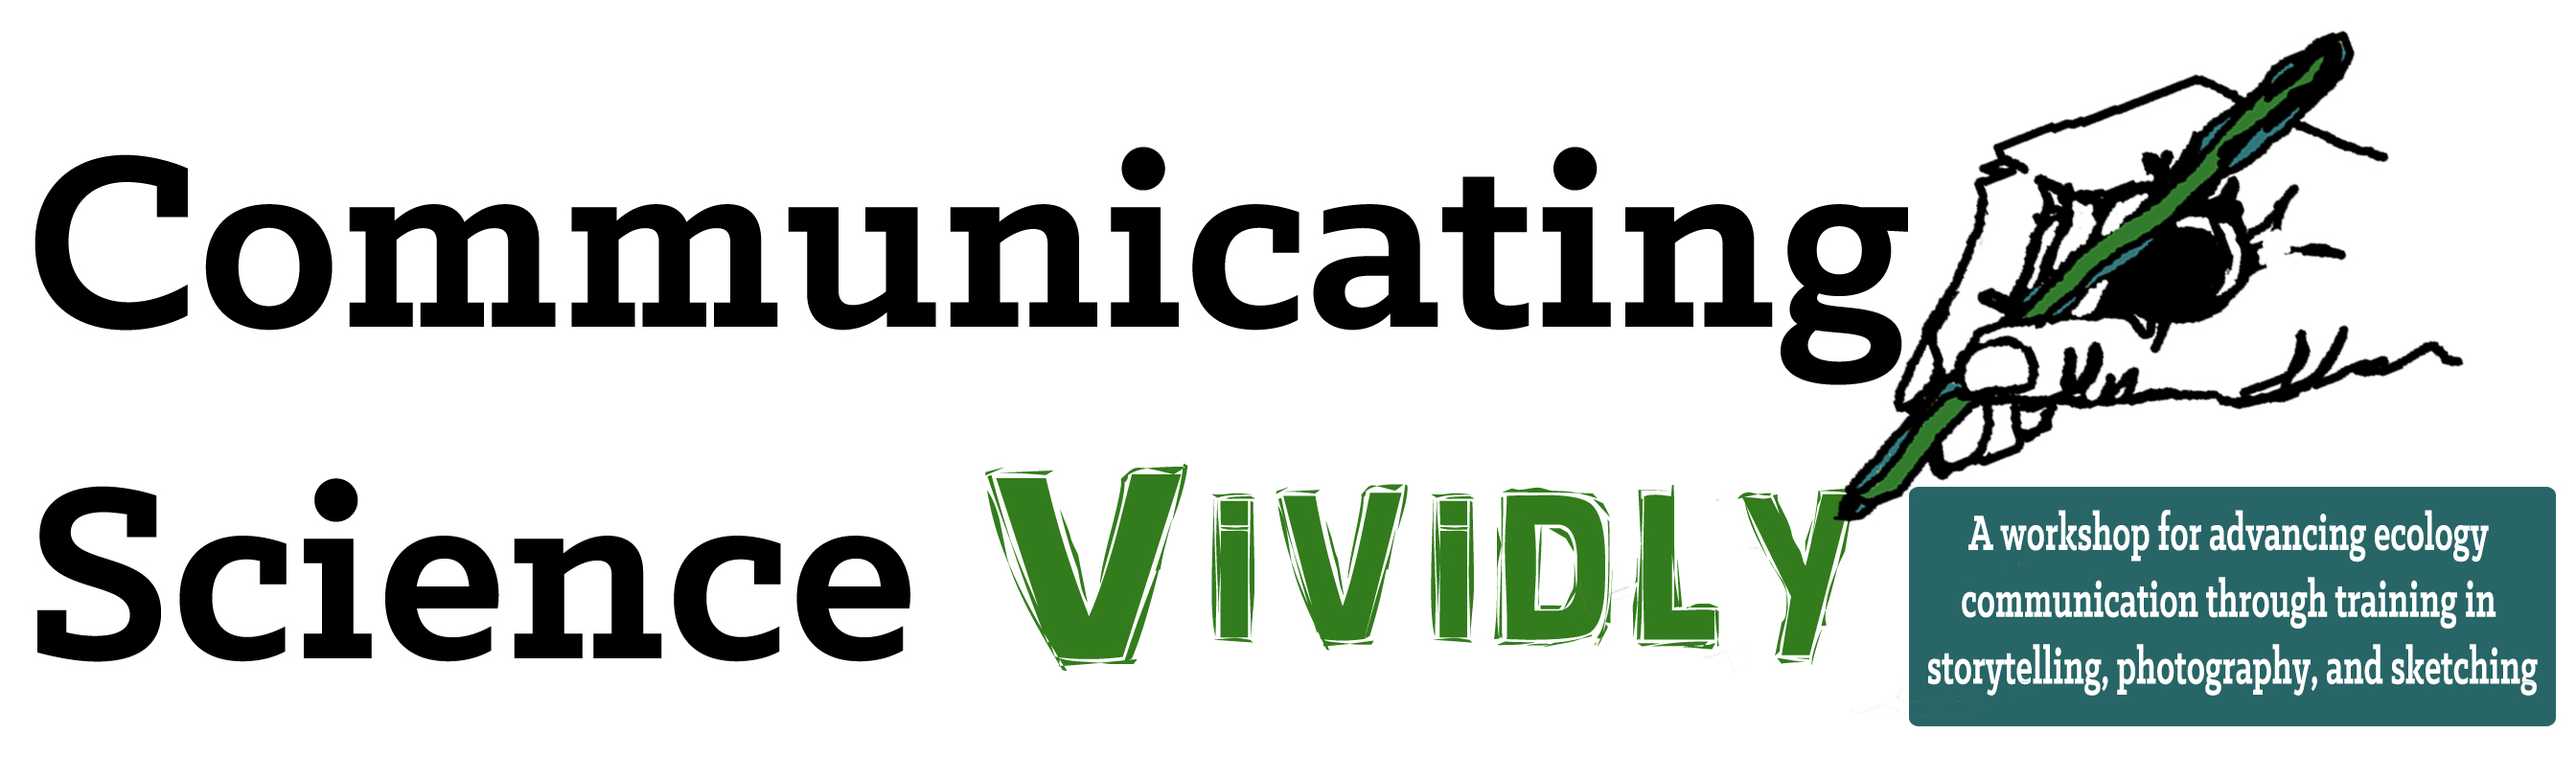 Communicating science vividly_workshop banner_v1